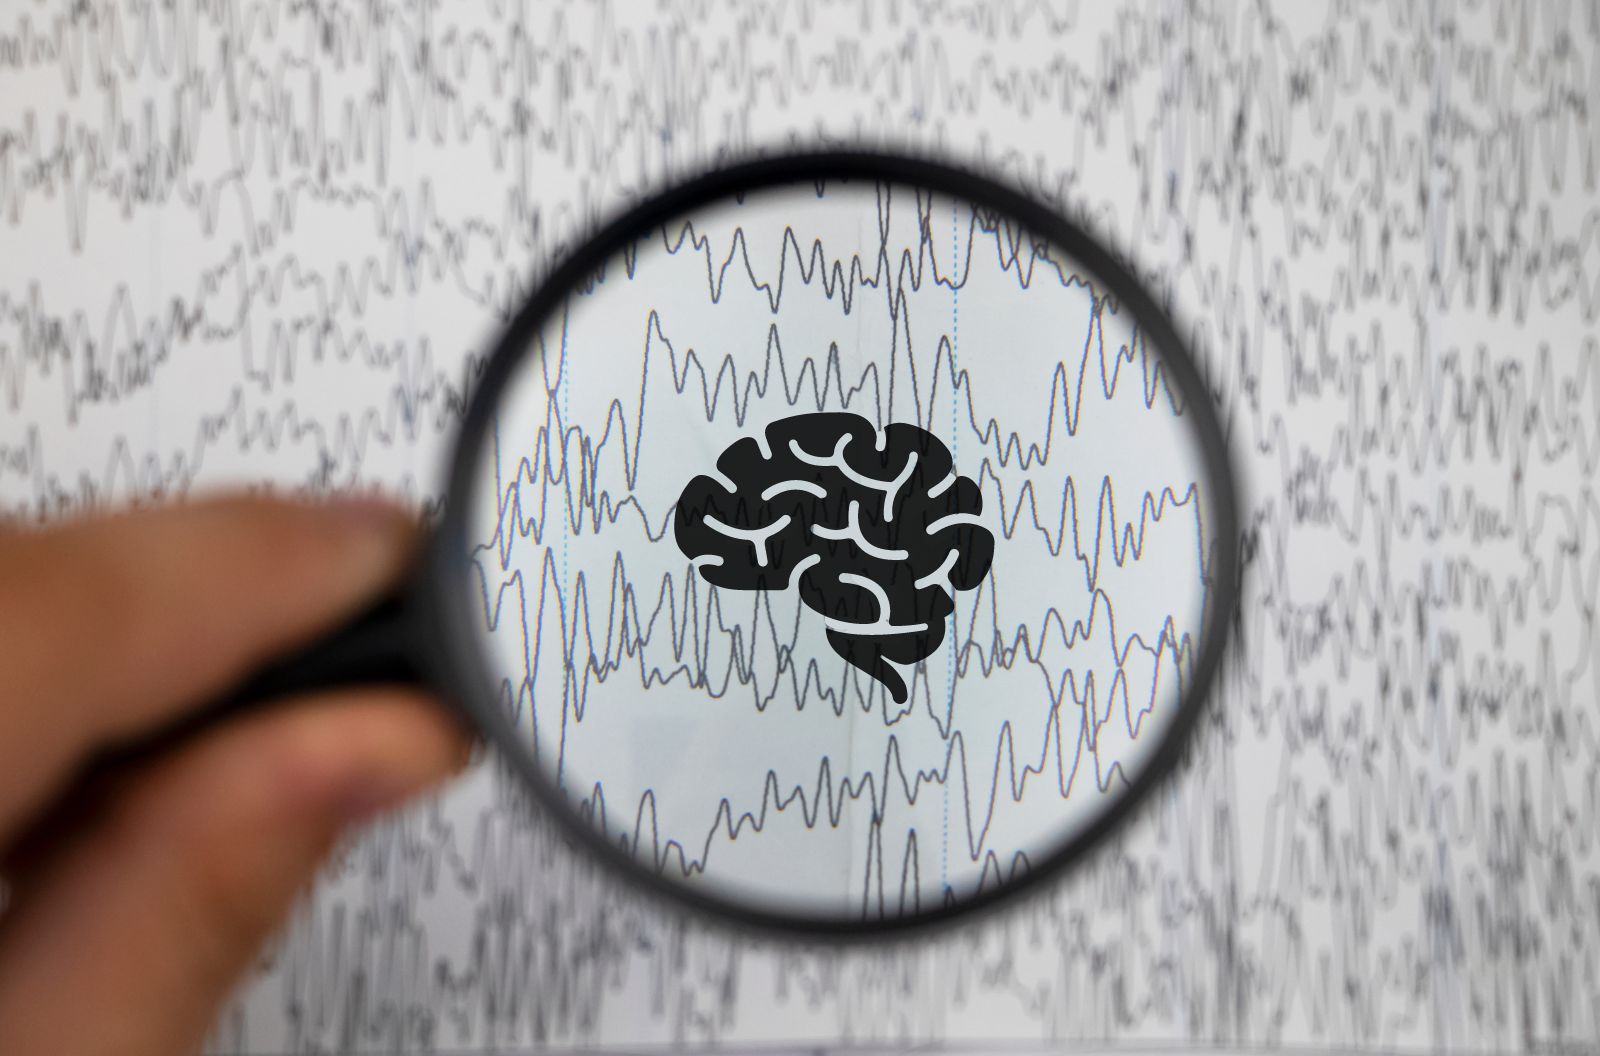 Brain waves measured by a neurologist